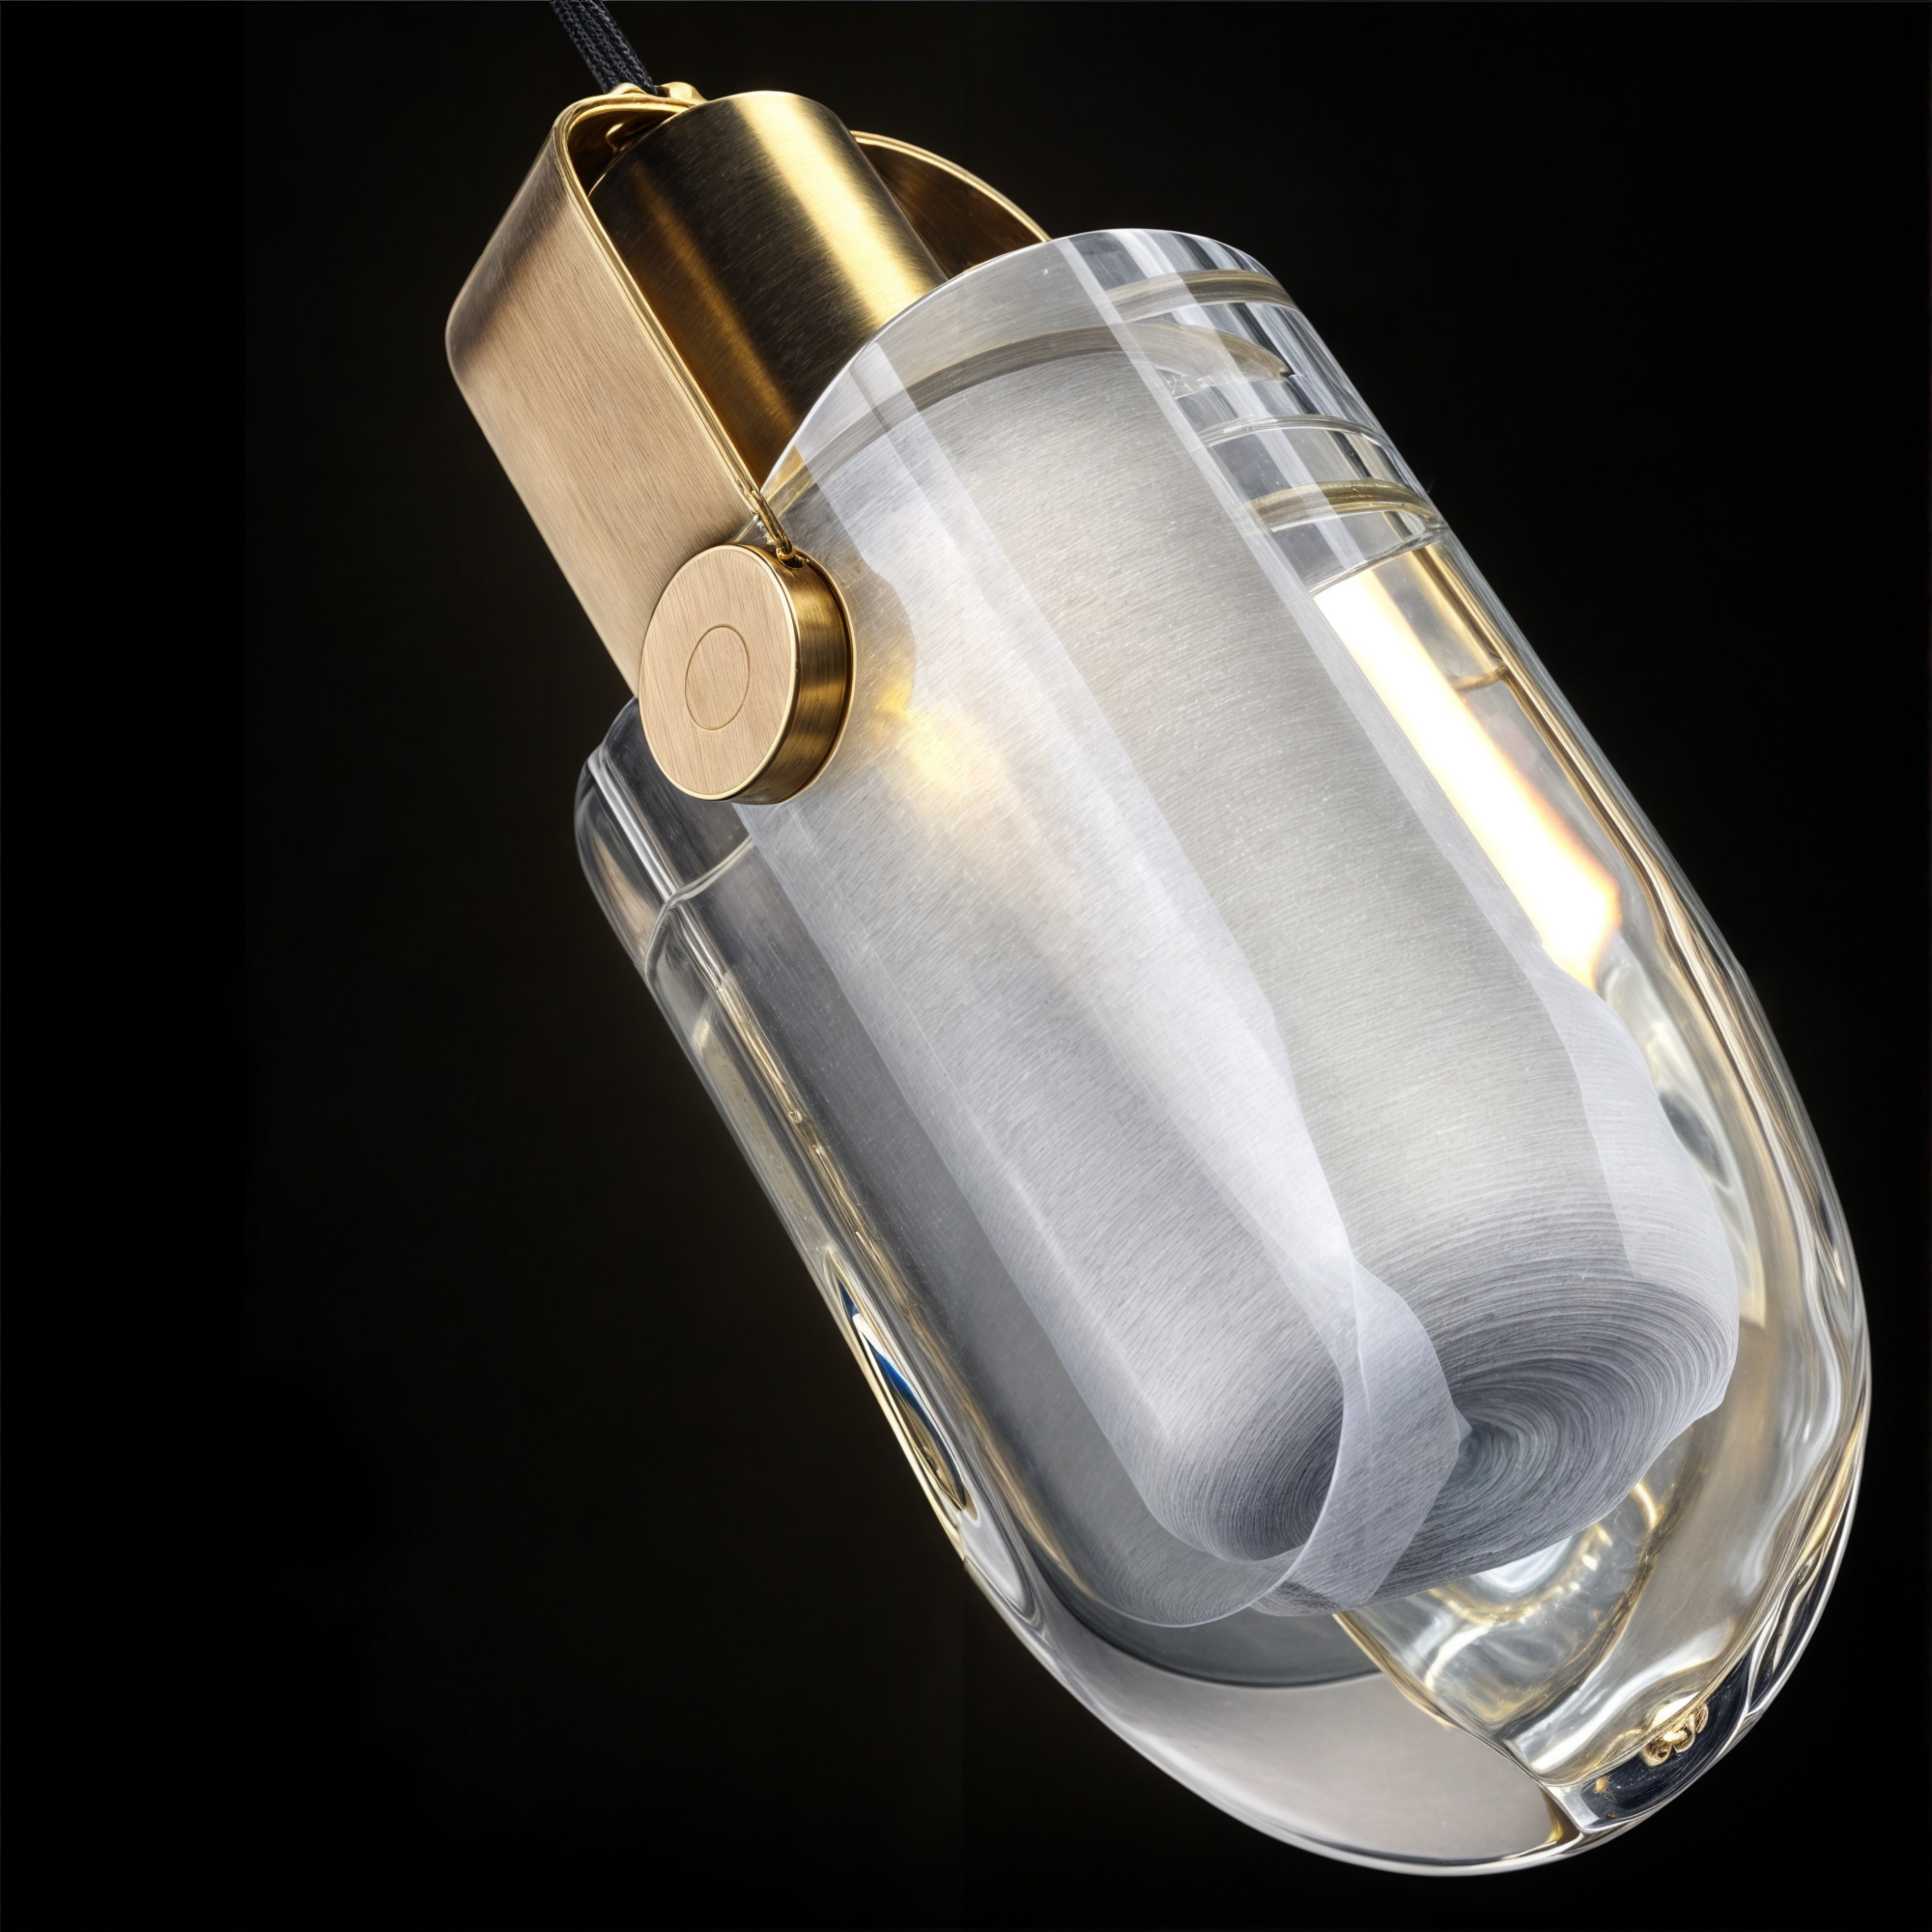 Moderne Gold Oval Crystal Pendelleuchte - Kupfer & Glas/Kristall Kronleuchter für Wohnzimmer, Schlafzimmer, Küche - LED-Lampen enthalten, 3 leuchtende Farben (Weiß, Warm, Neutral)